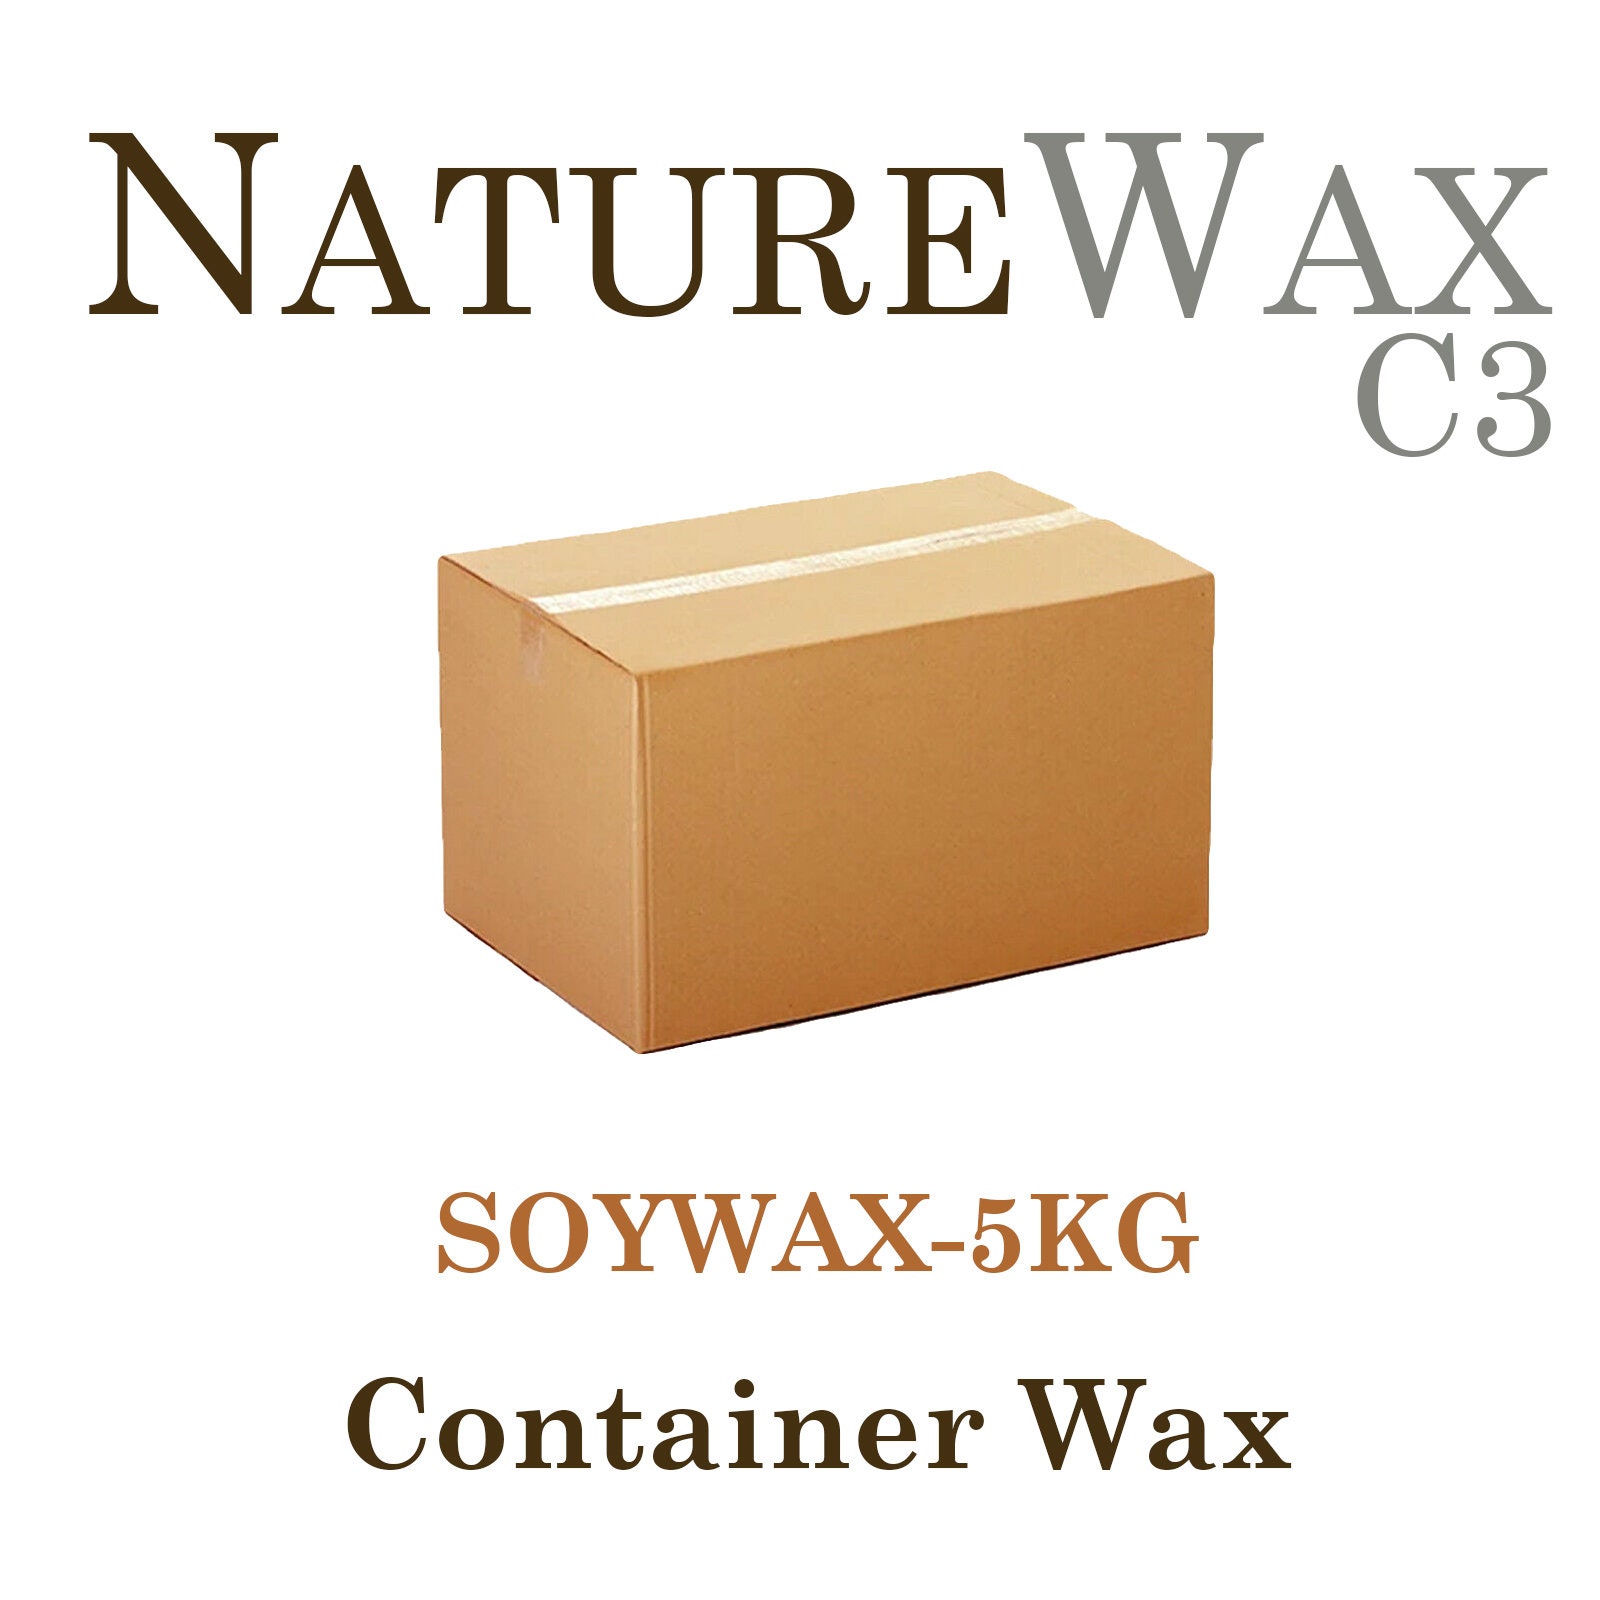 Cire de soja - Naturewax C3 - 0,5 kg/ 500g - cire de soja pour fabriquer  soi-même ses